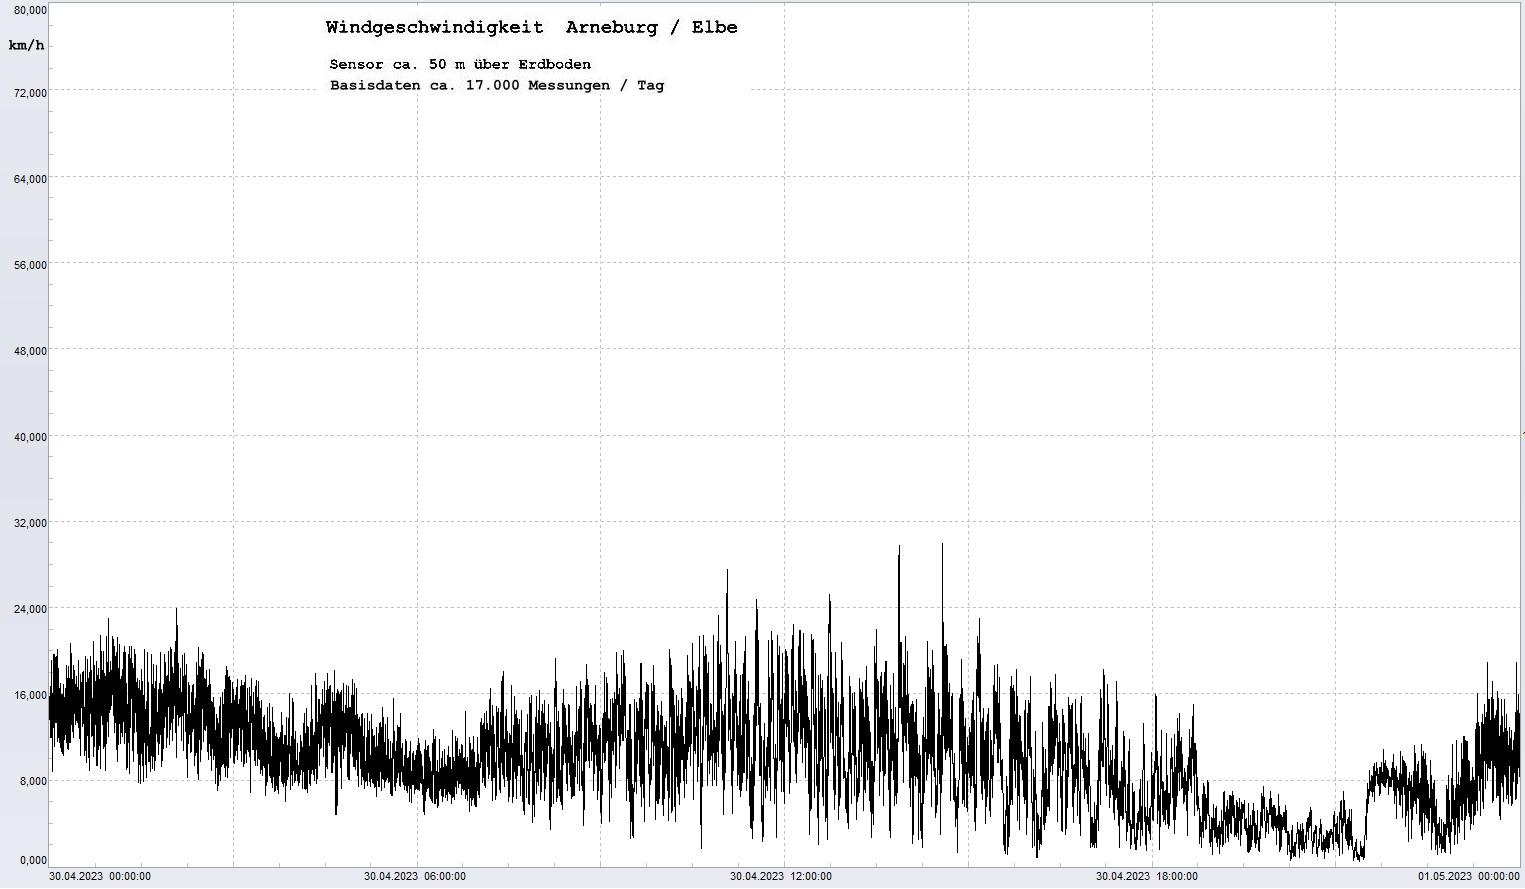 Arneburg Tages-Diagramm Winddaten, 30.04.2023
  Diagramm, Sensor auf Gebude, ca. 50 m ber Erdboden, Basis: 5s-Aufzeichnung